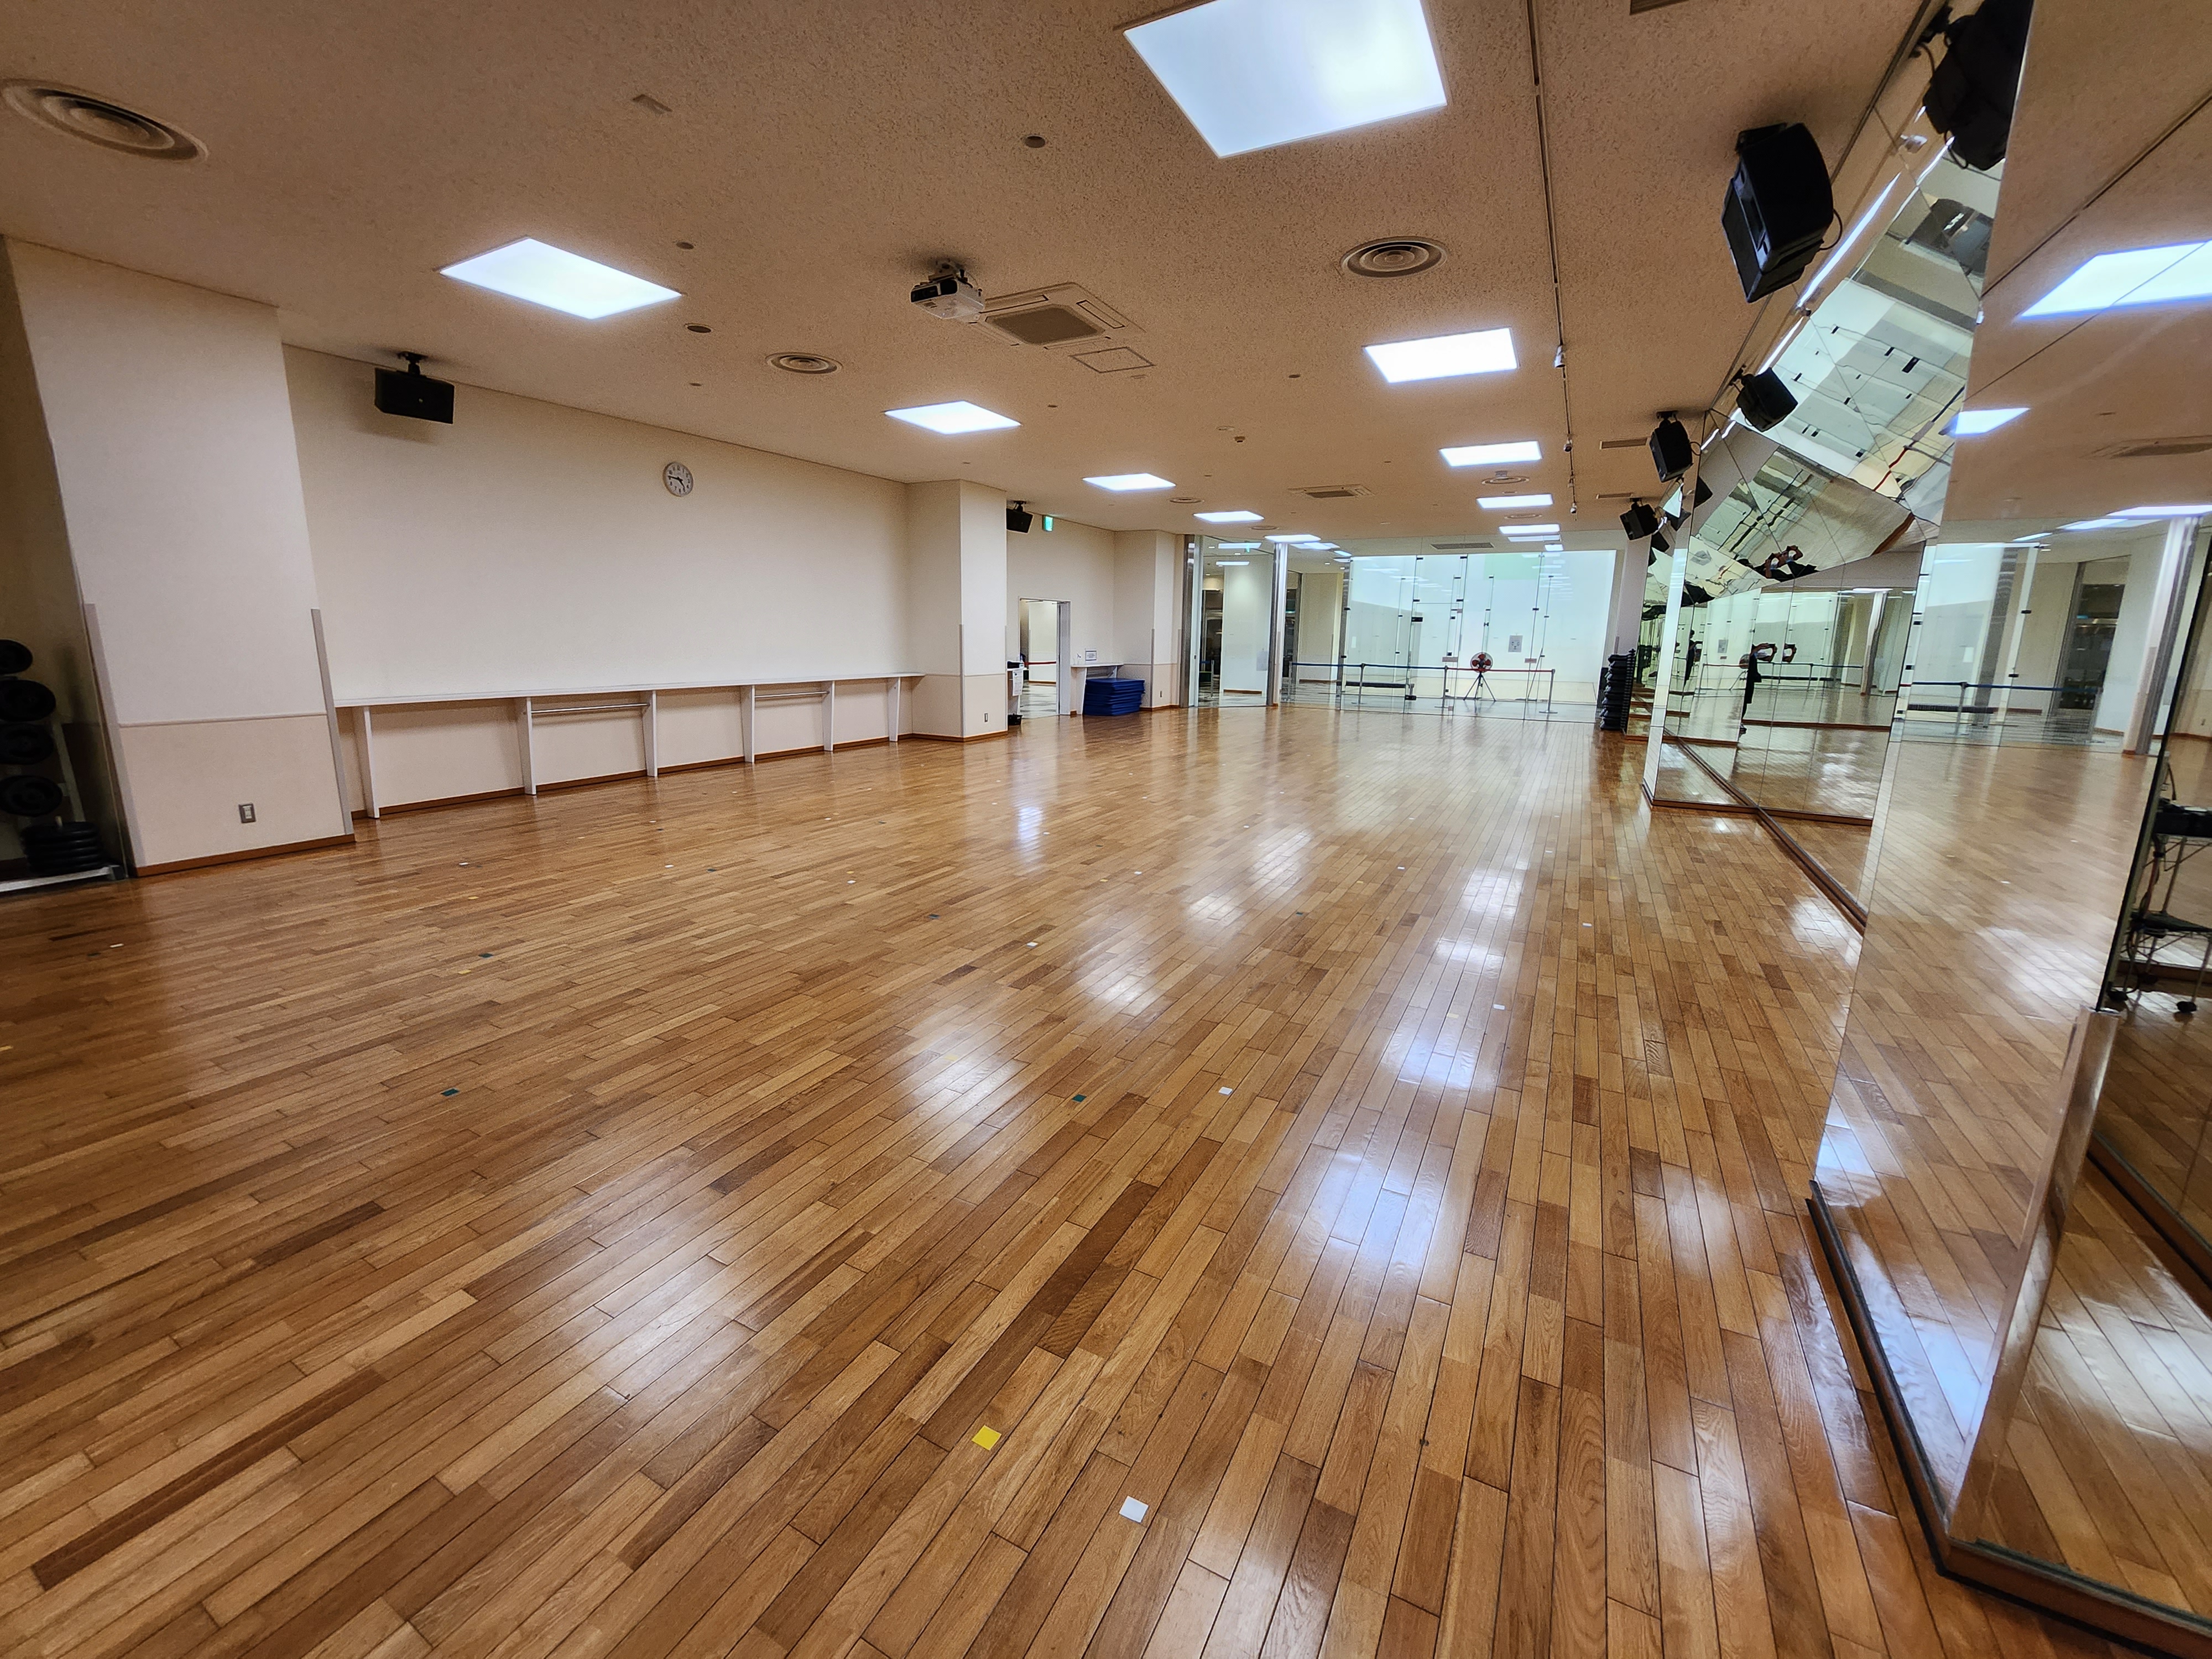 ＜第1スタジオ＞キッズダンスは鏡張りの広いスタジオで練習を行います。